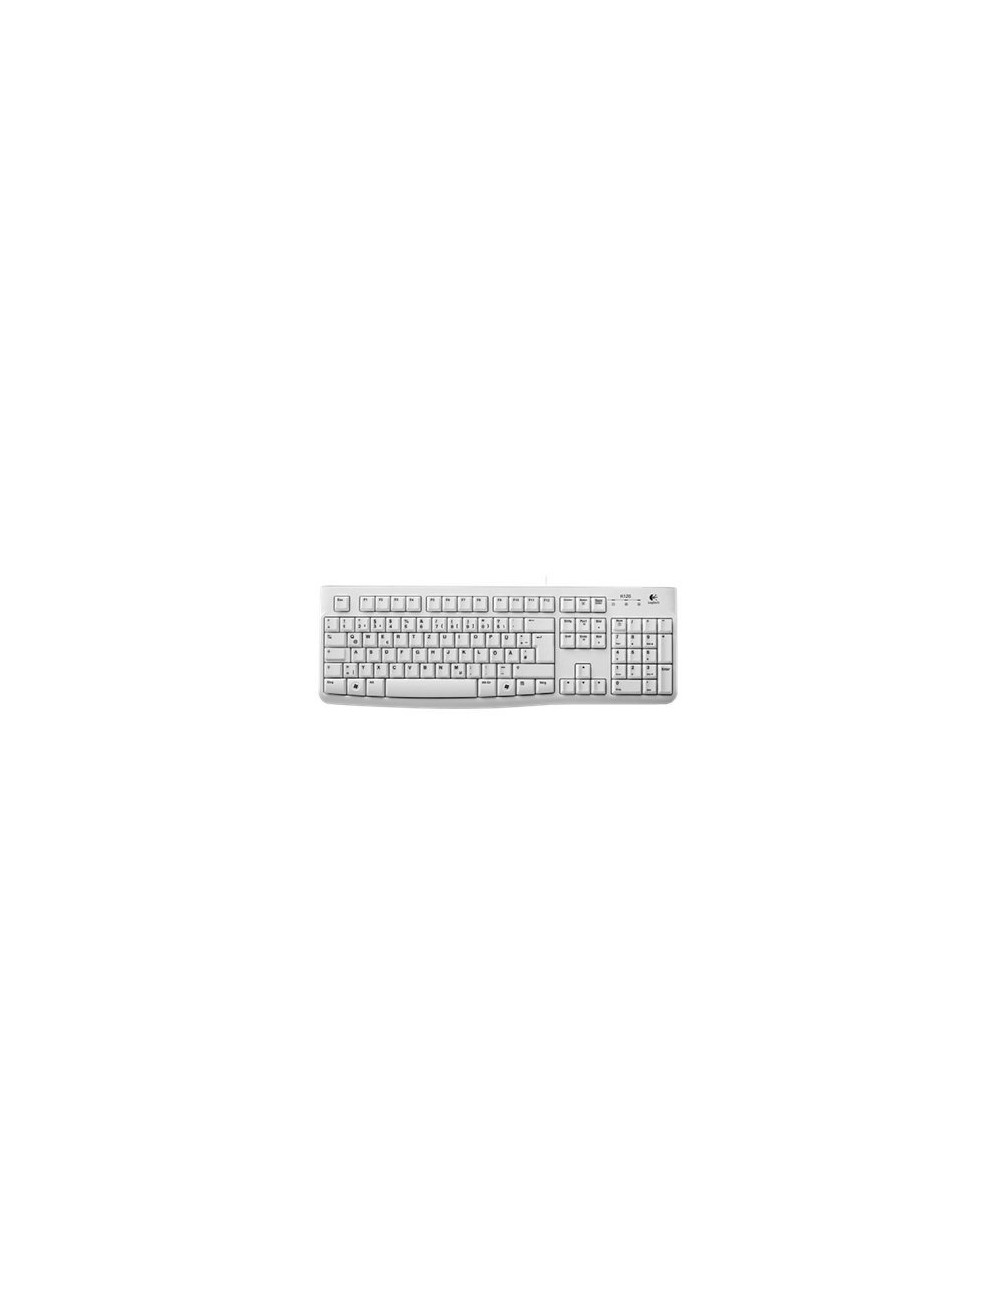 keyboard-logitech-oem-k120-weiss-usb-de-920-003626-1.jpg